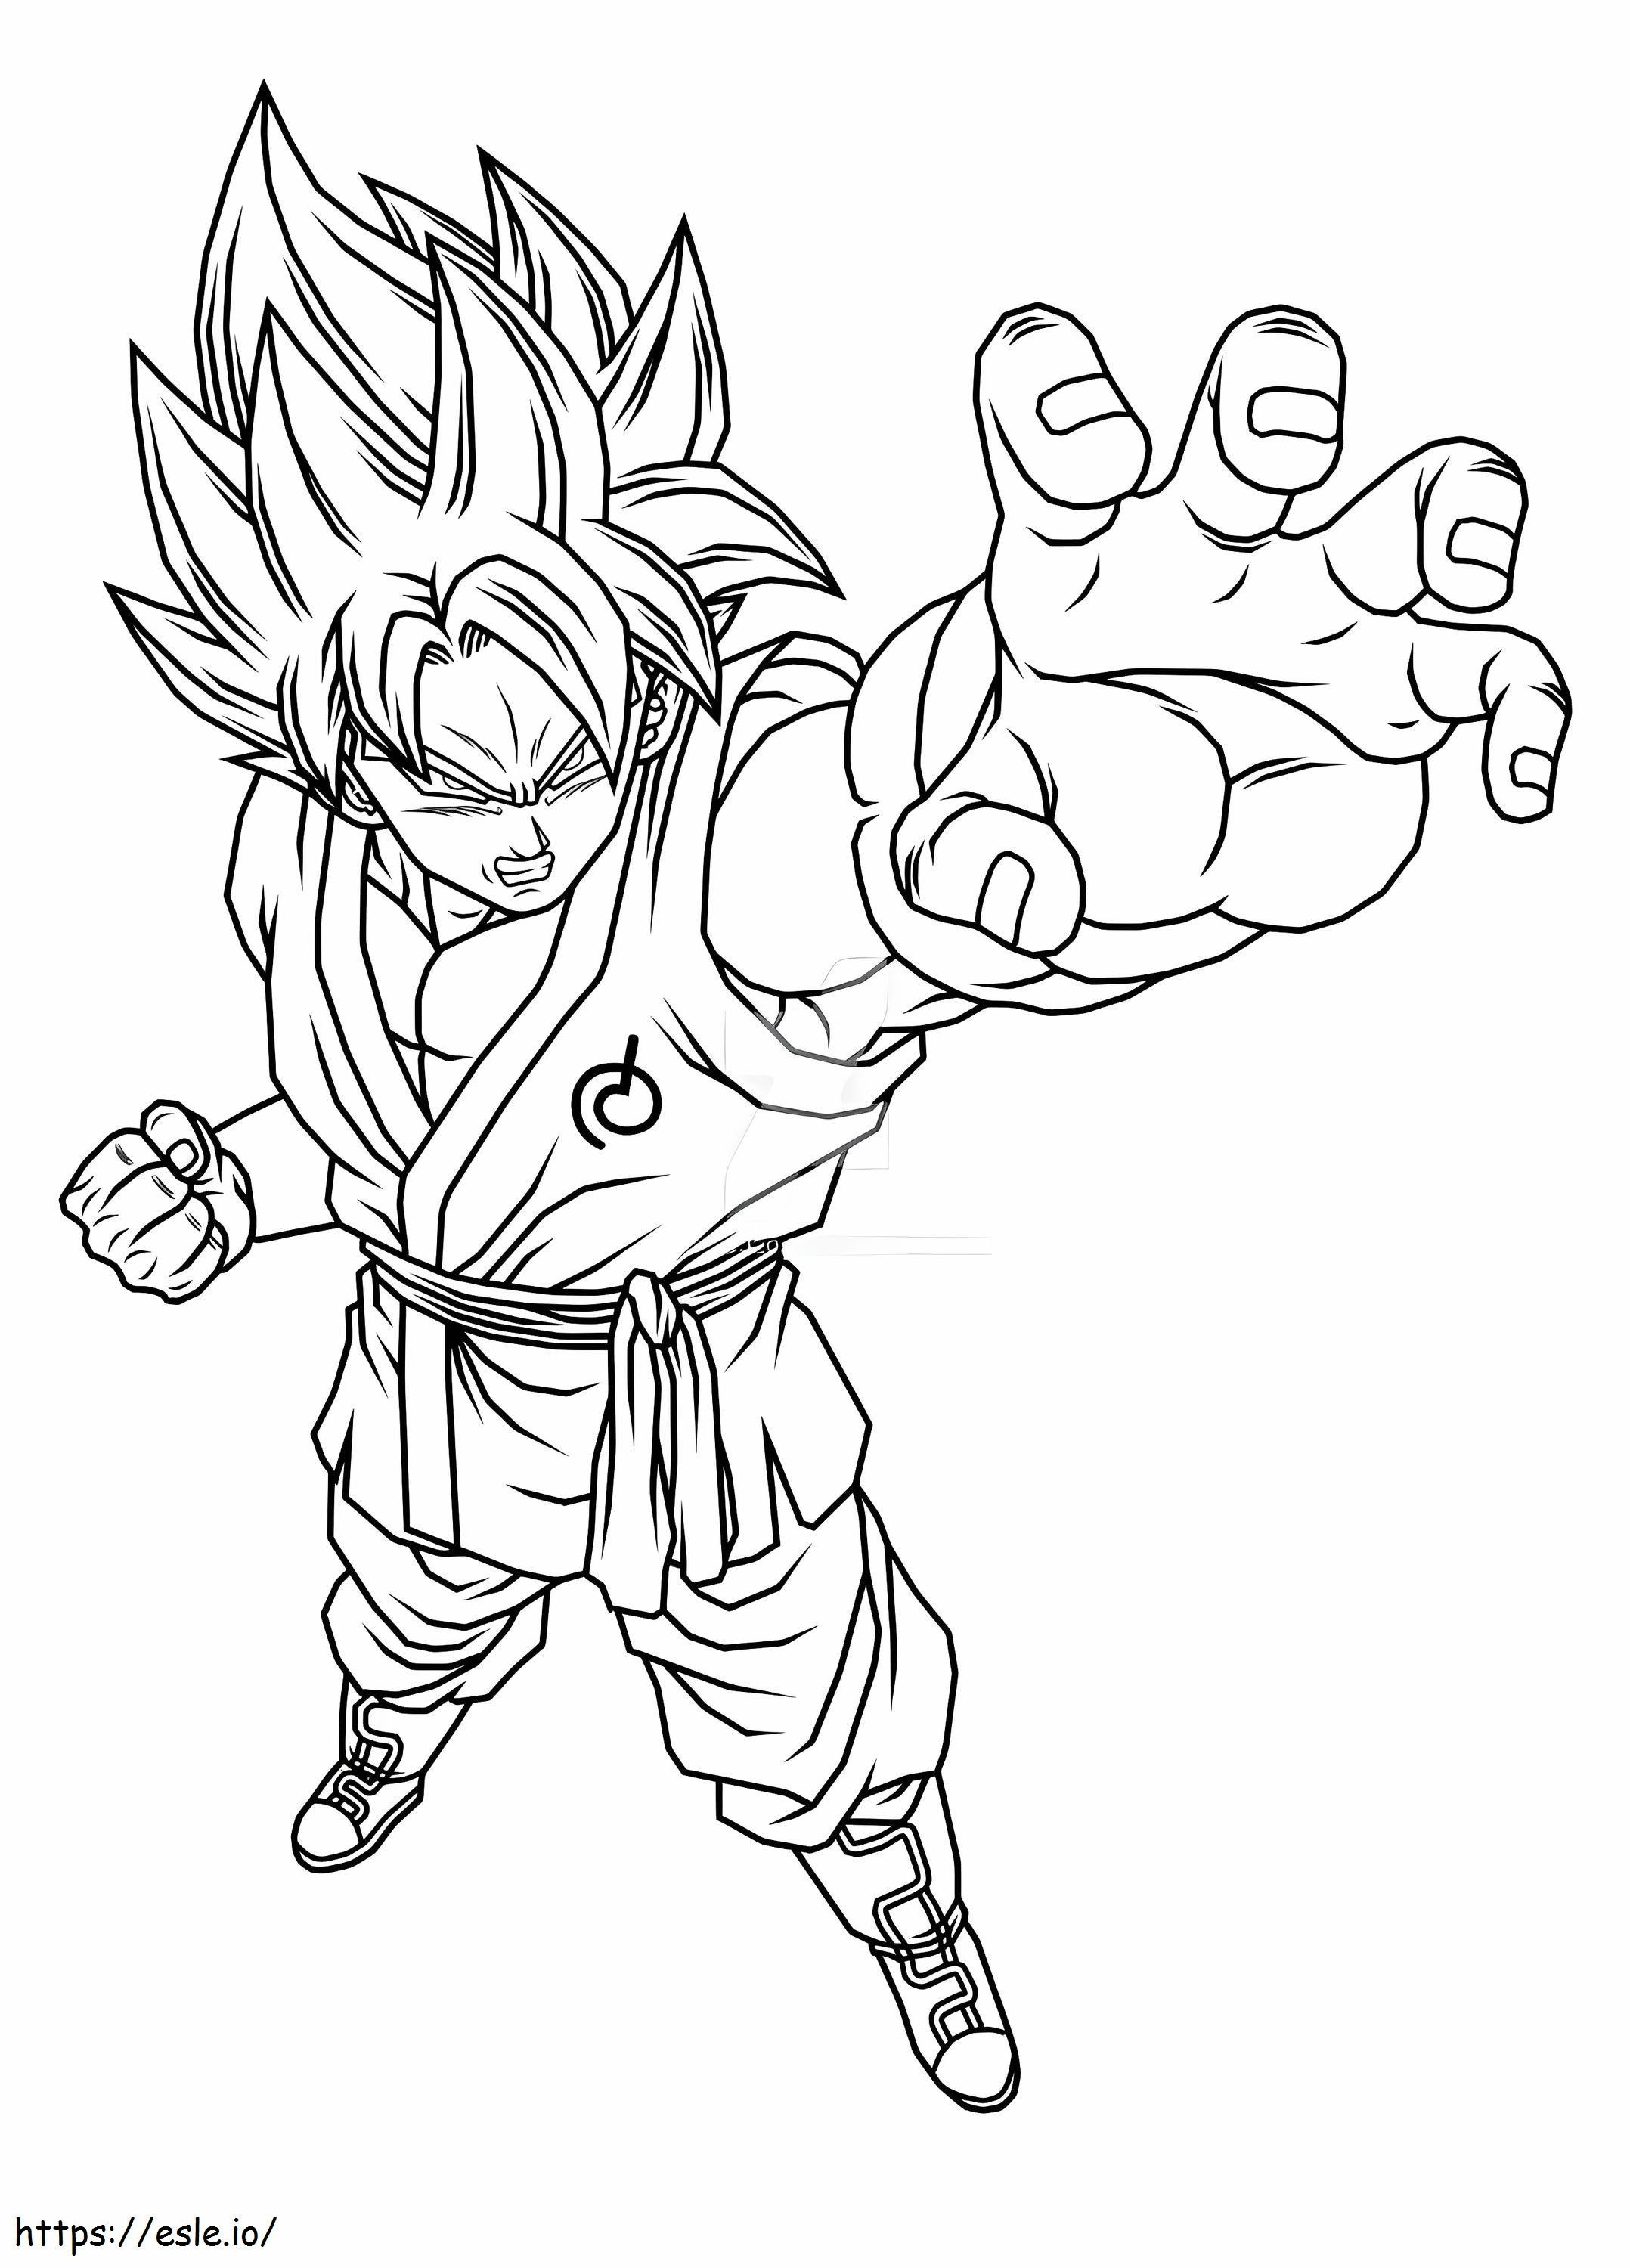 Angry Son Goku coloring page